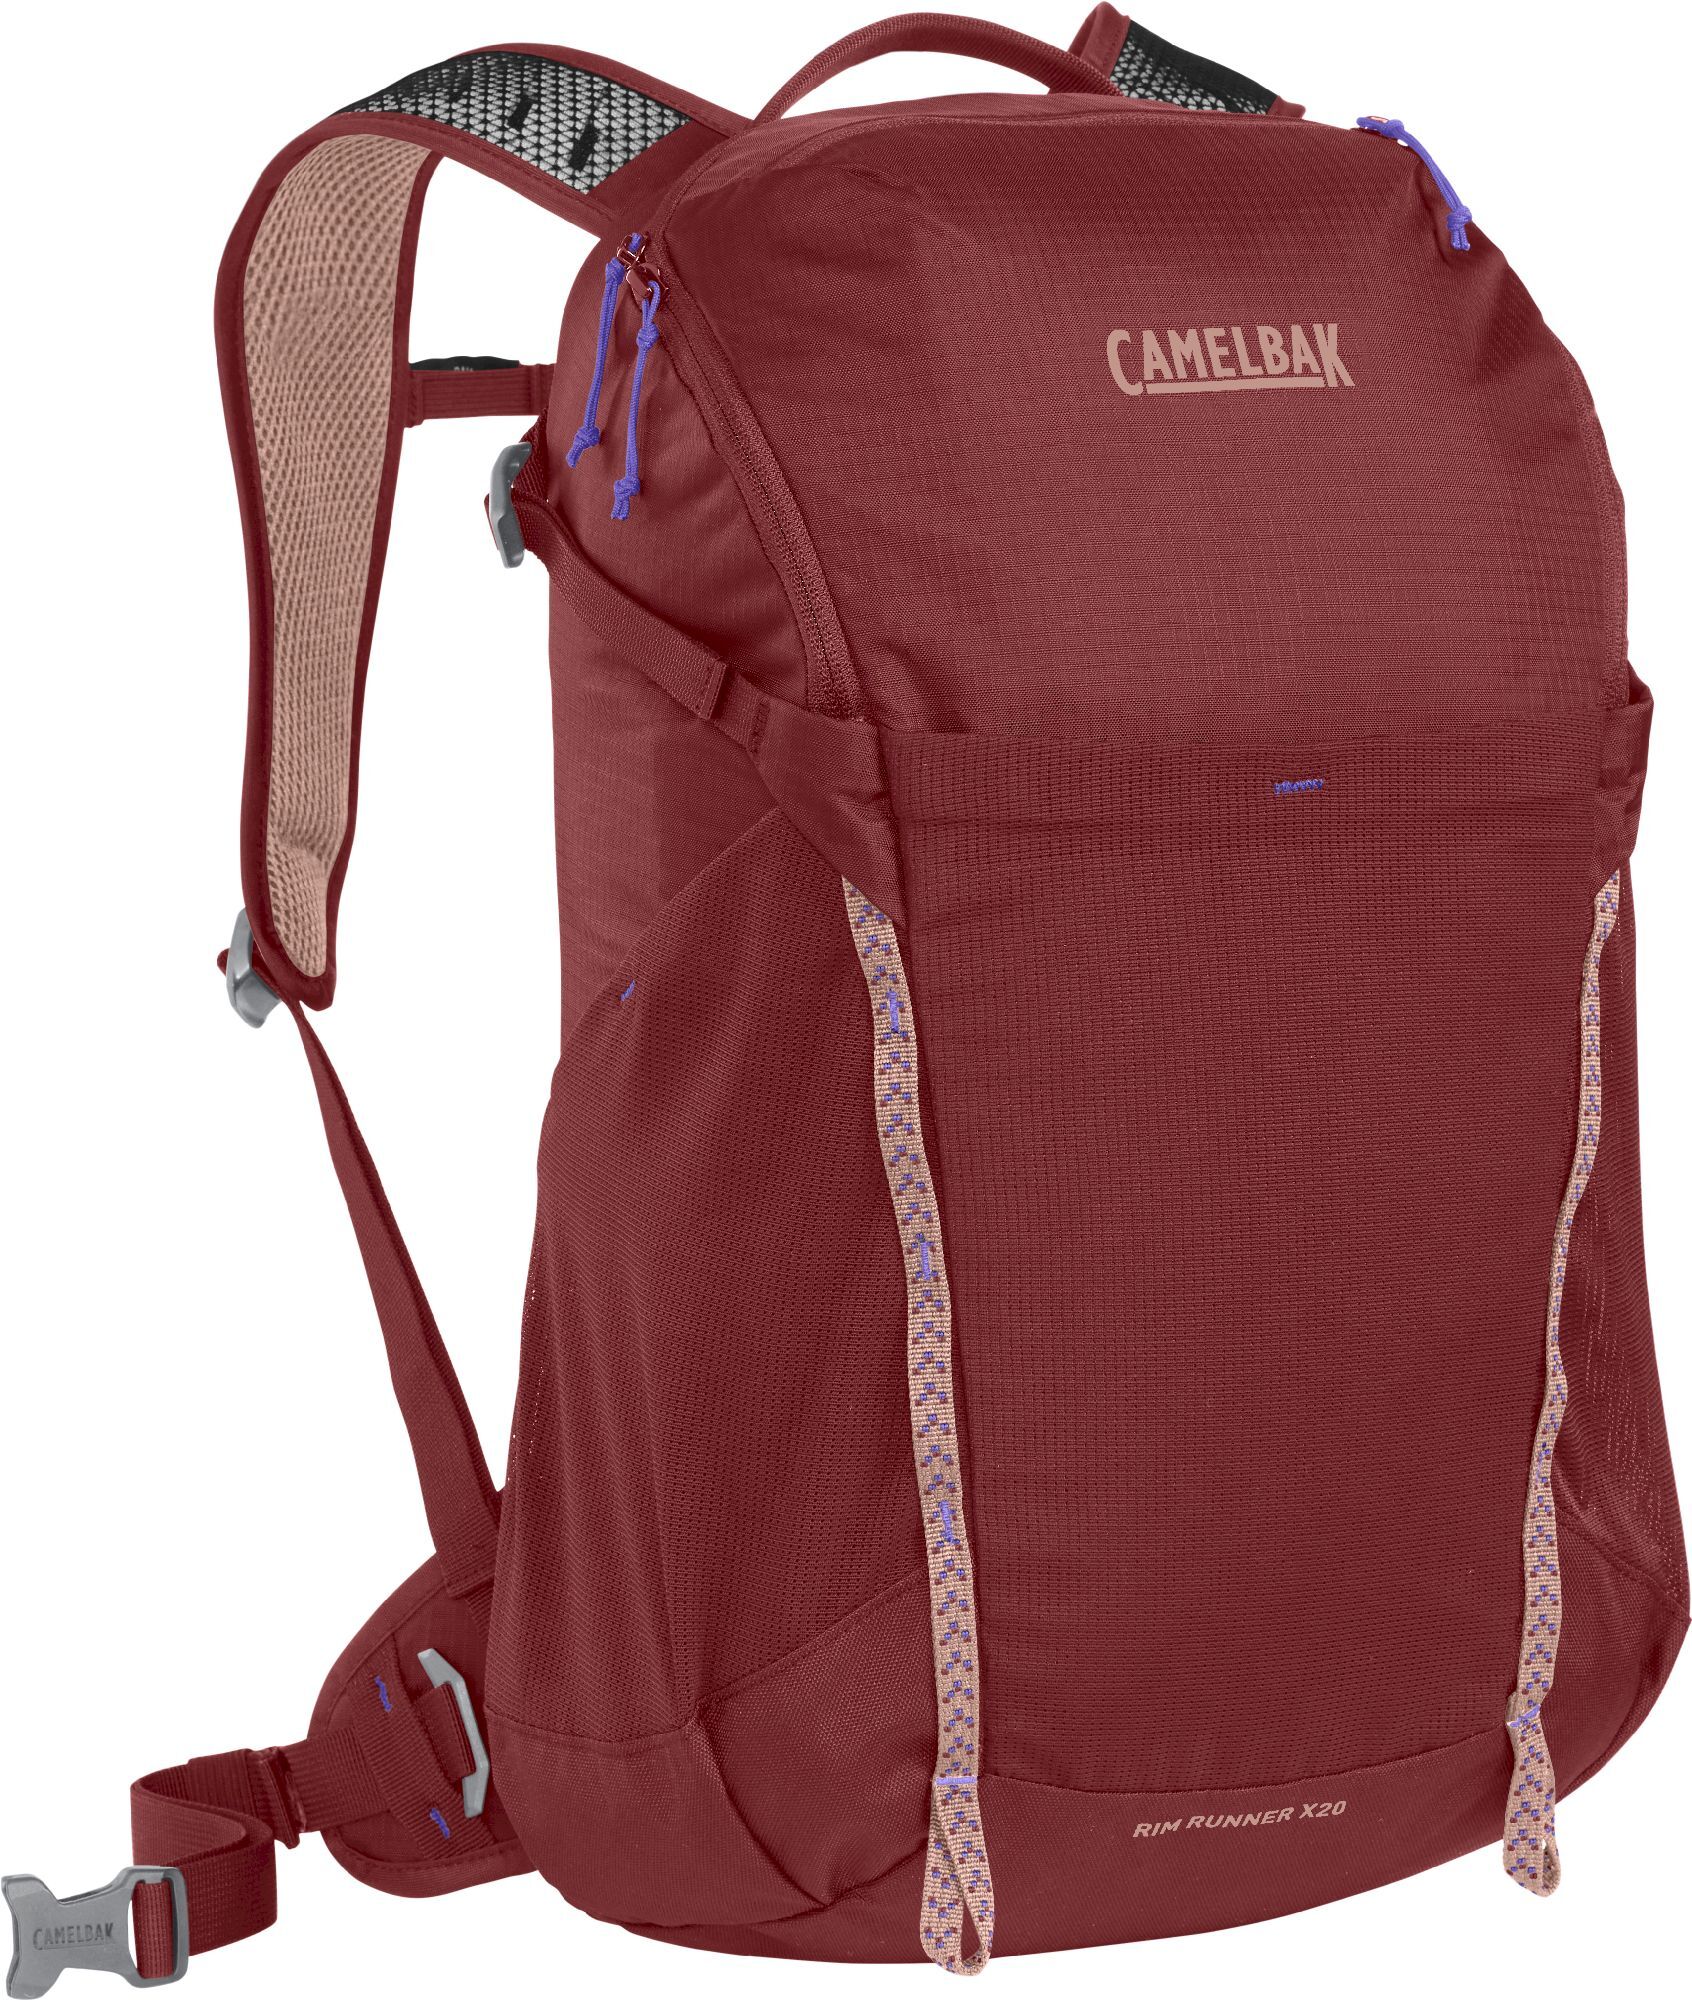 Camelbak Women's Rim Runner X20 Terra - Hydration backpack | Hardloop